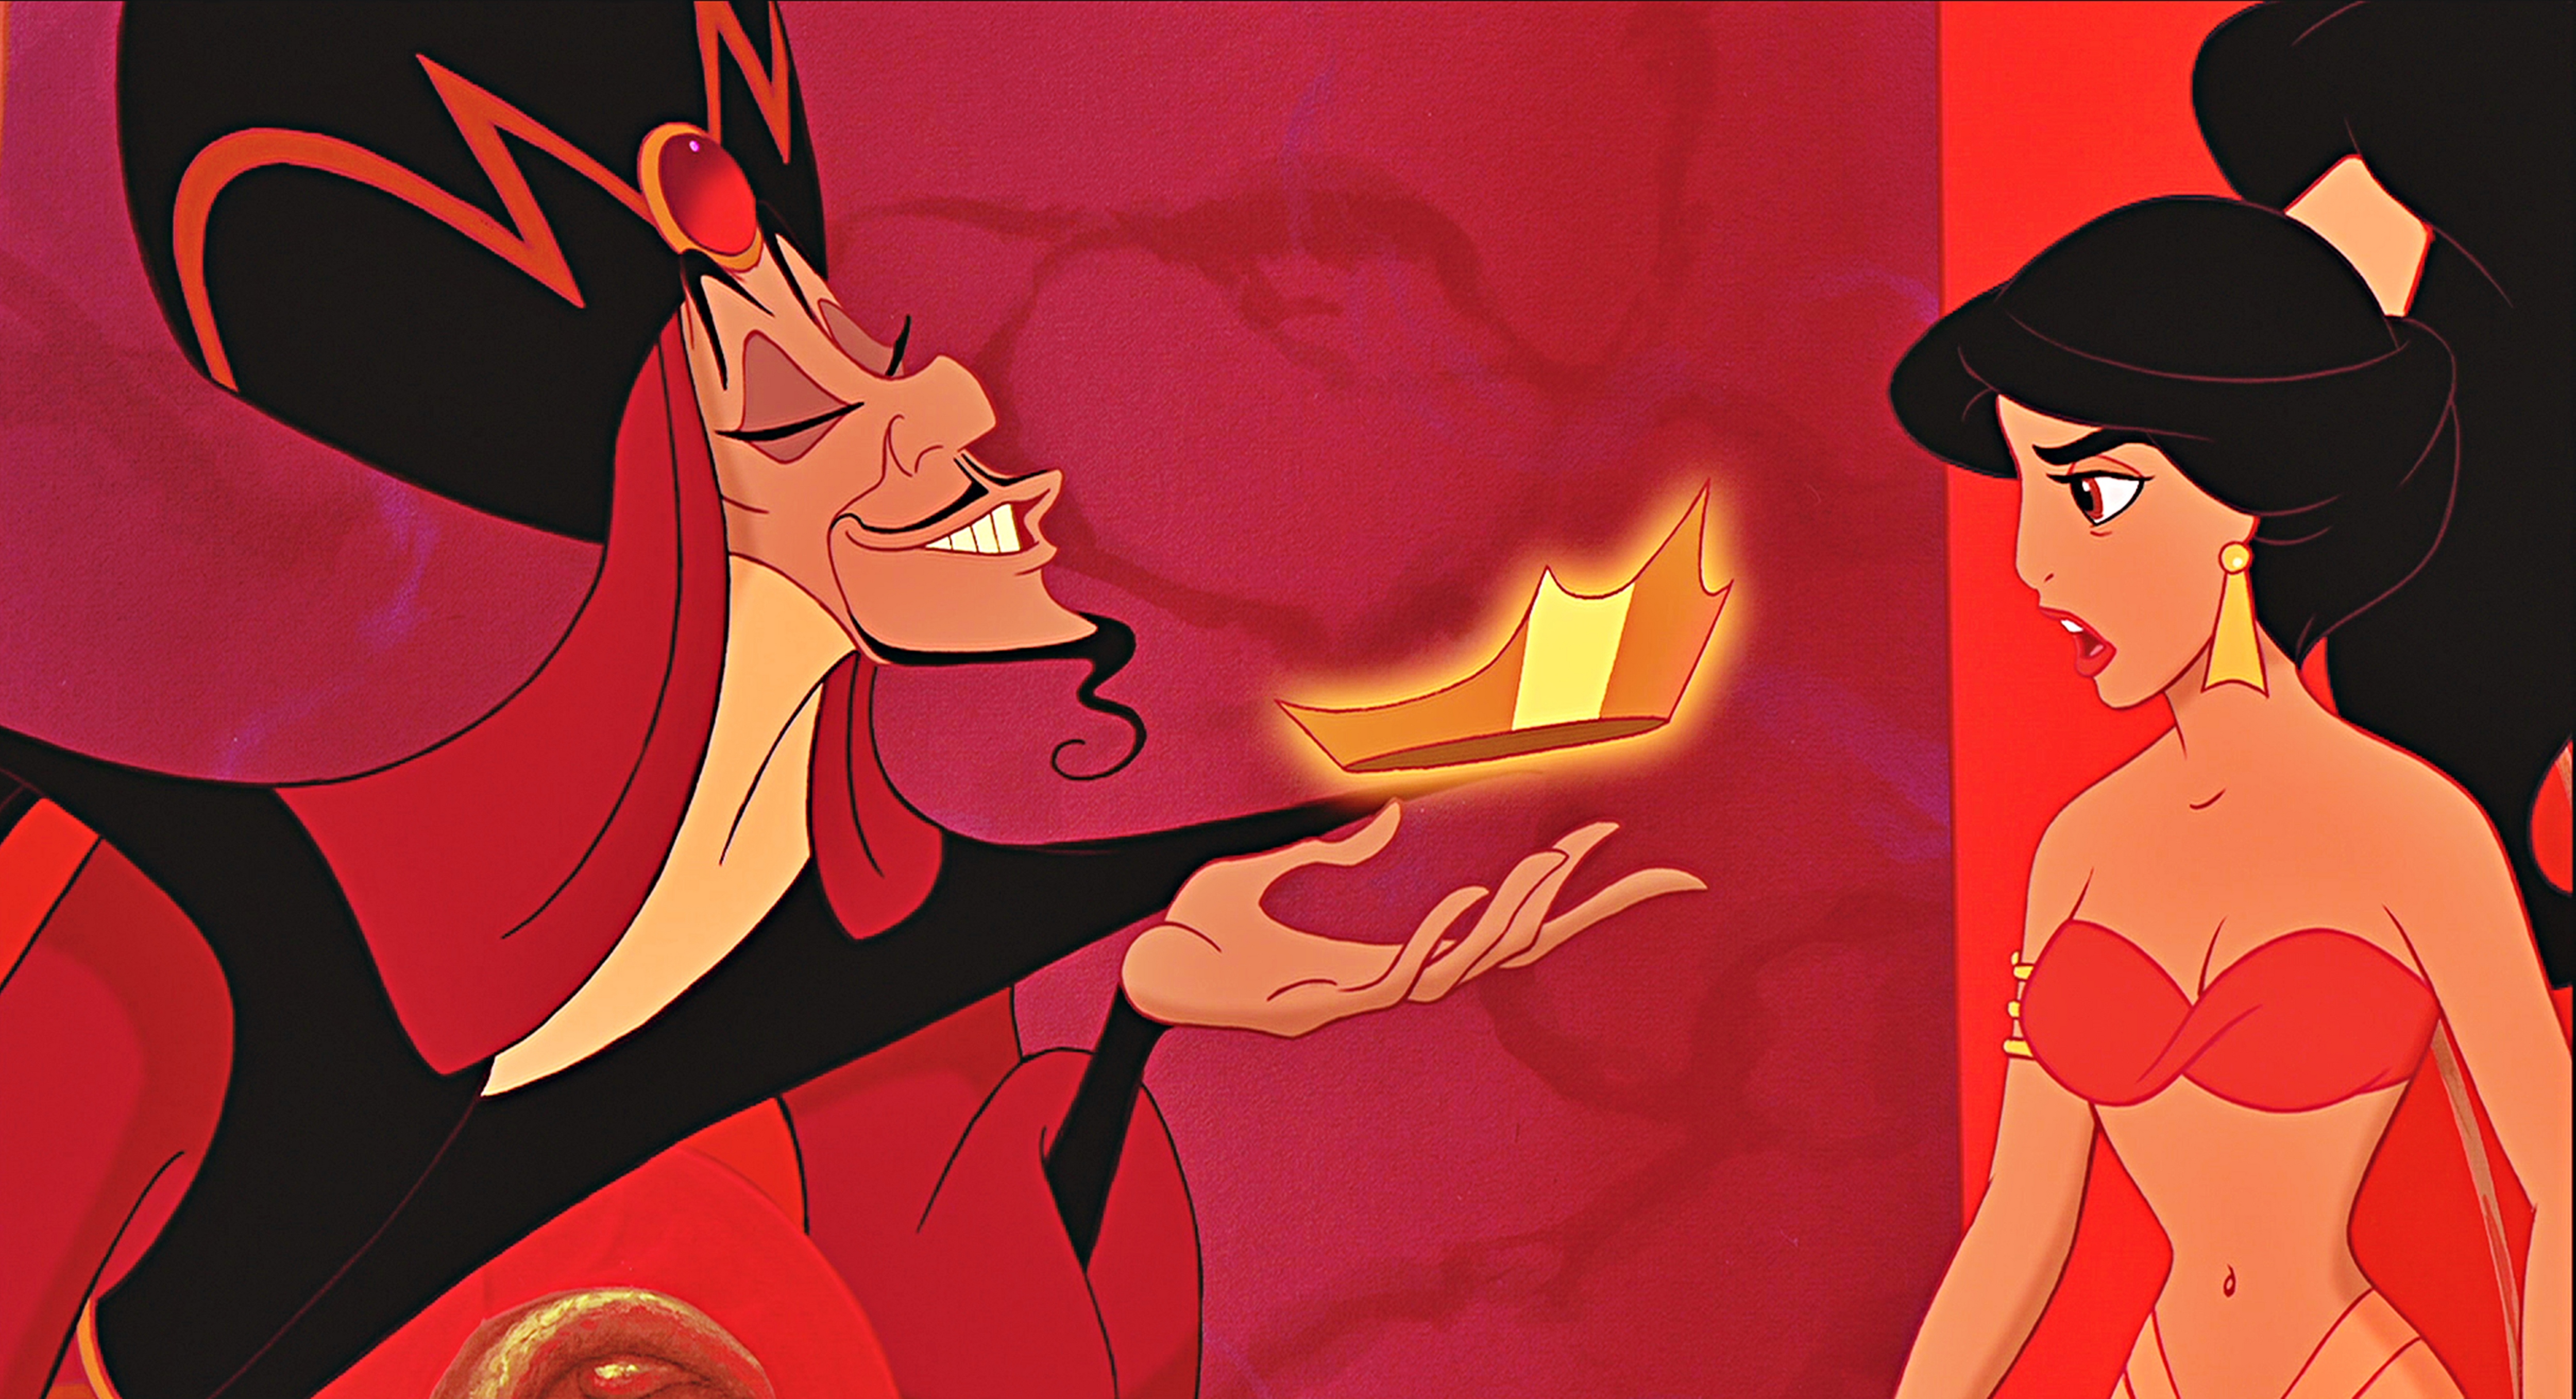 Jafar offering Jasmine to be his Queen.